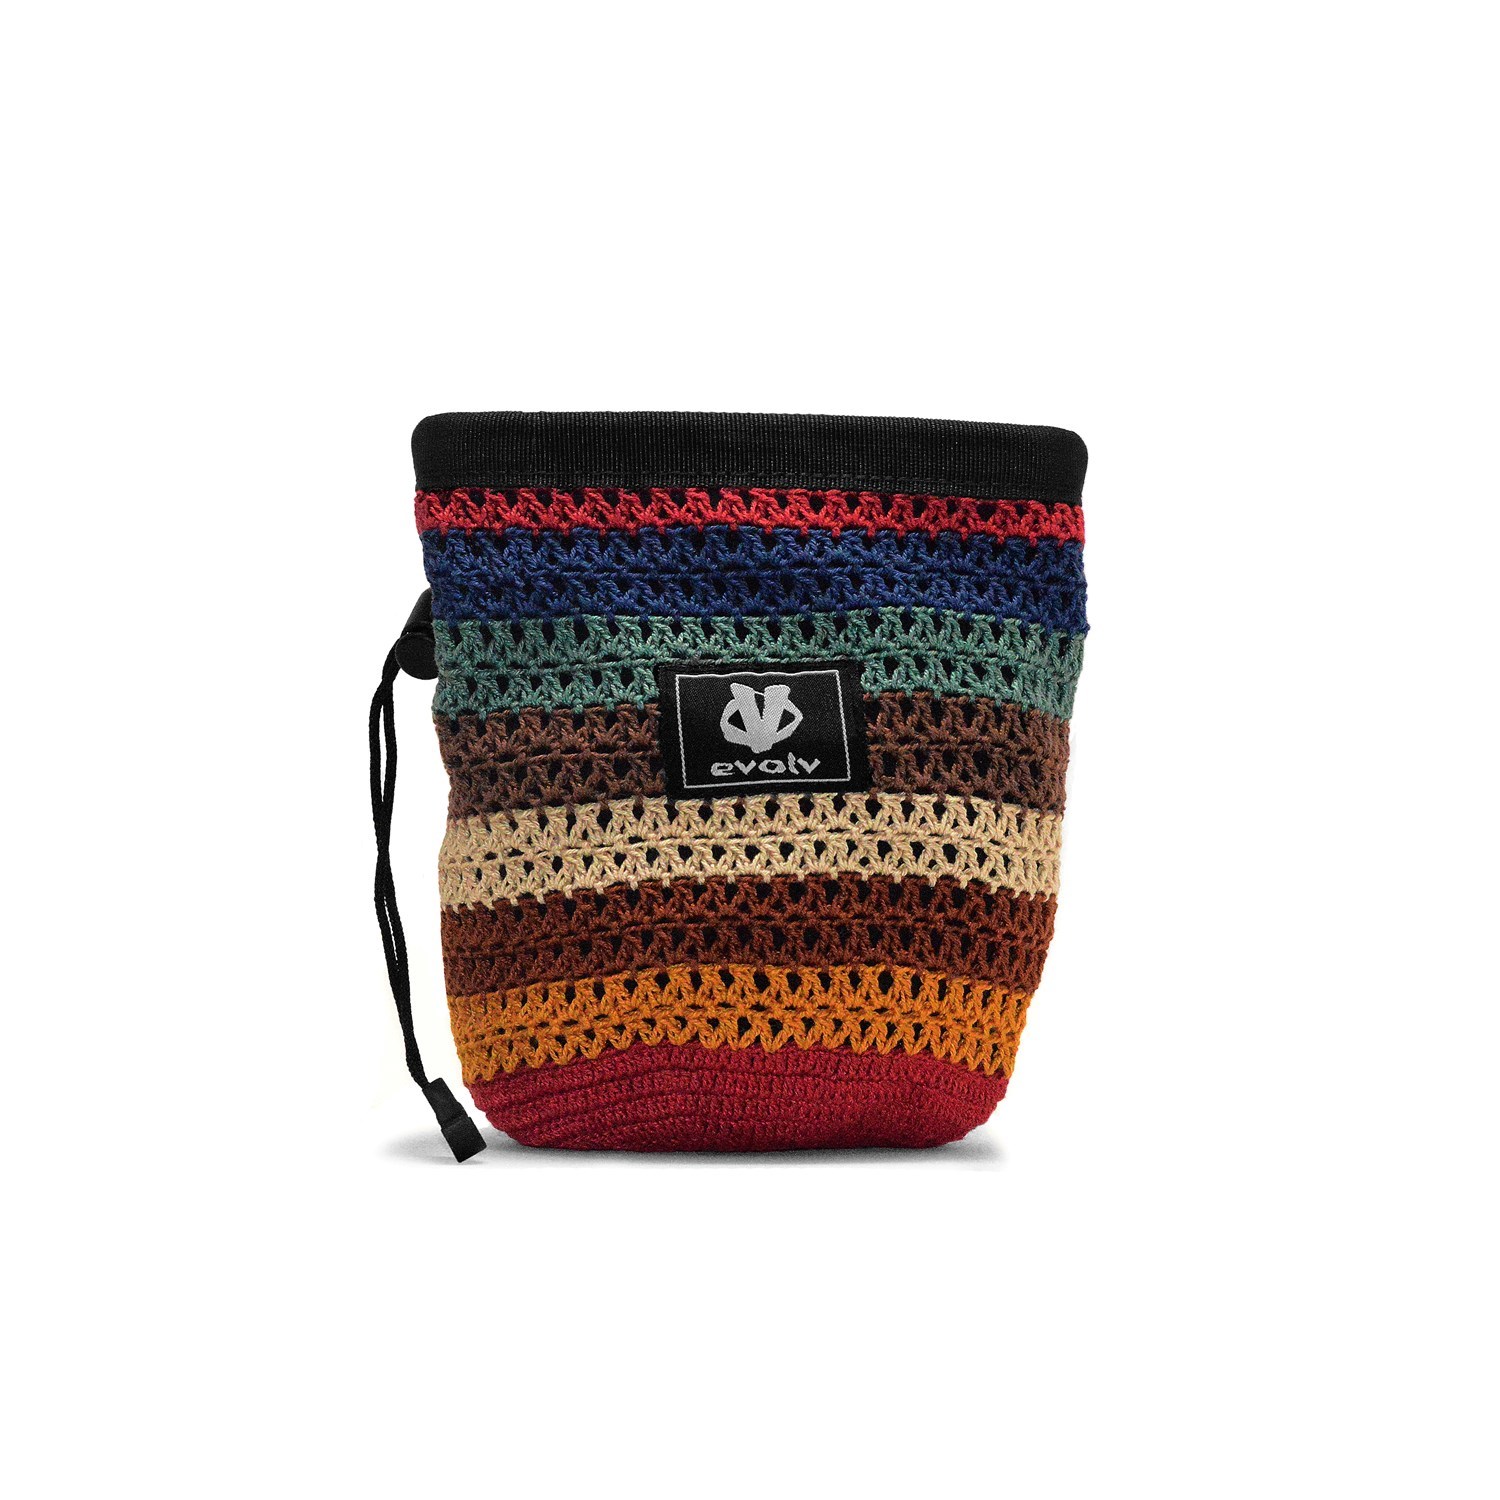 Evolv / Knit Sherpa Chalkbag